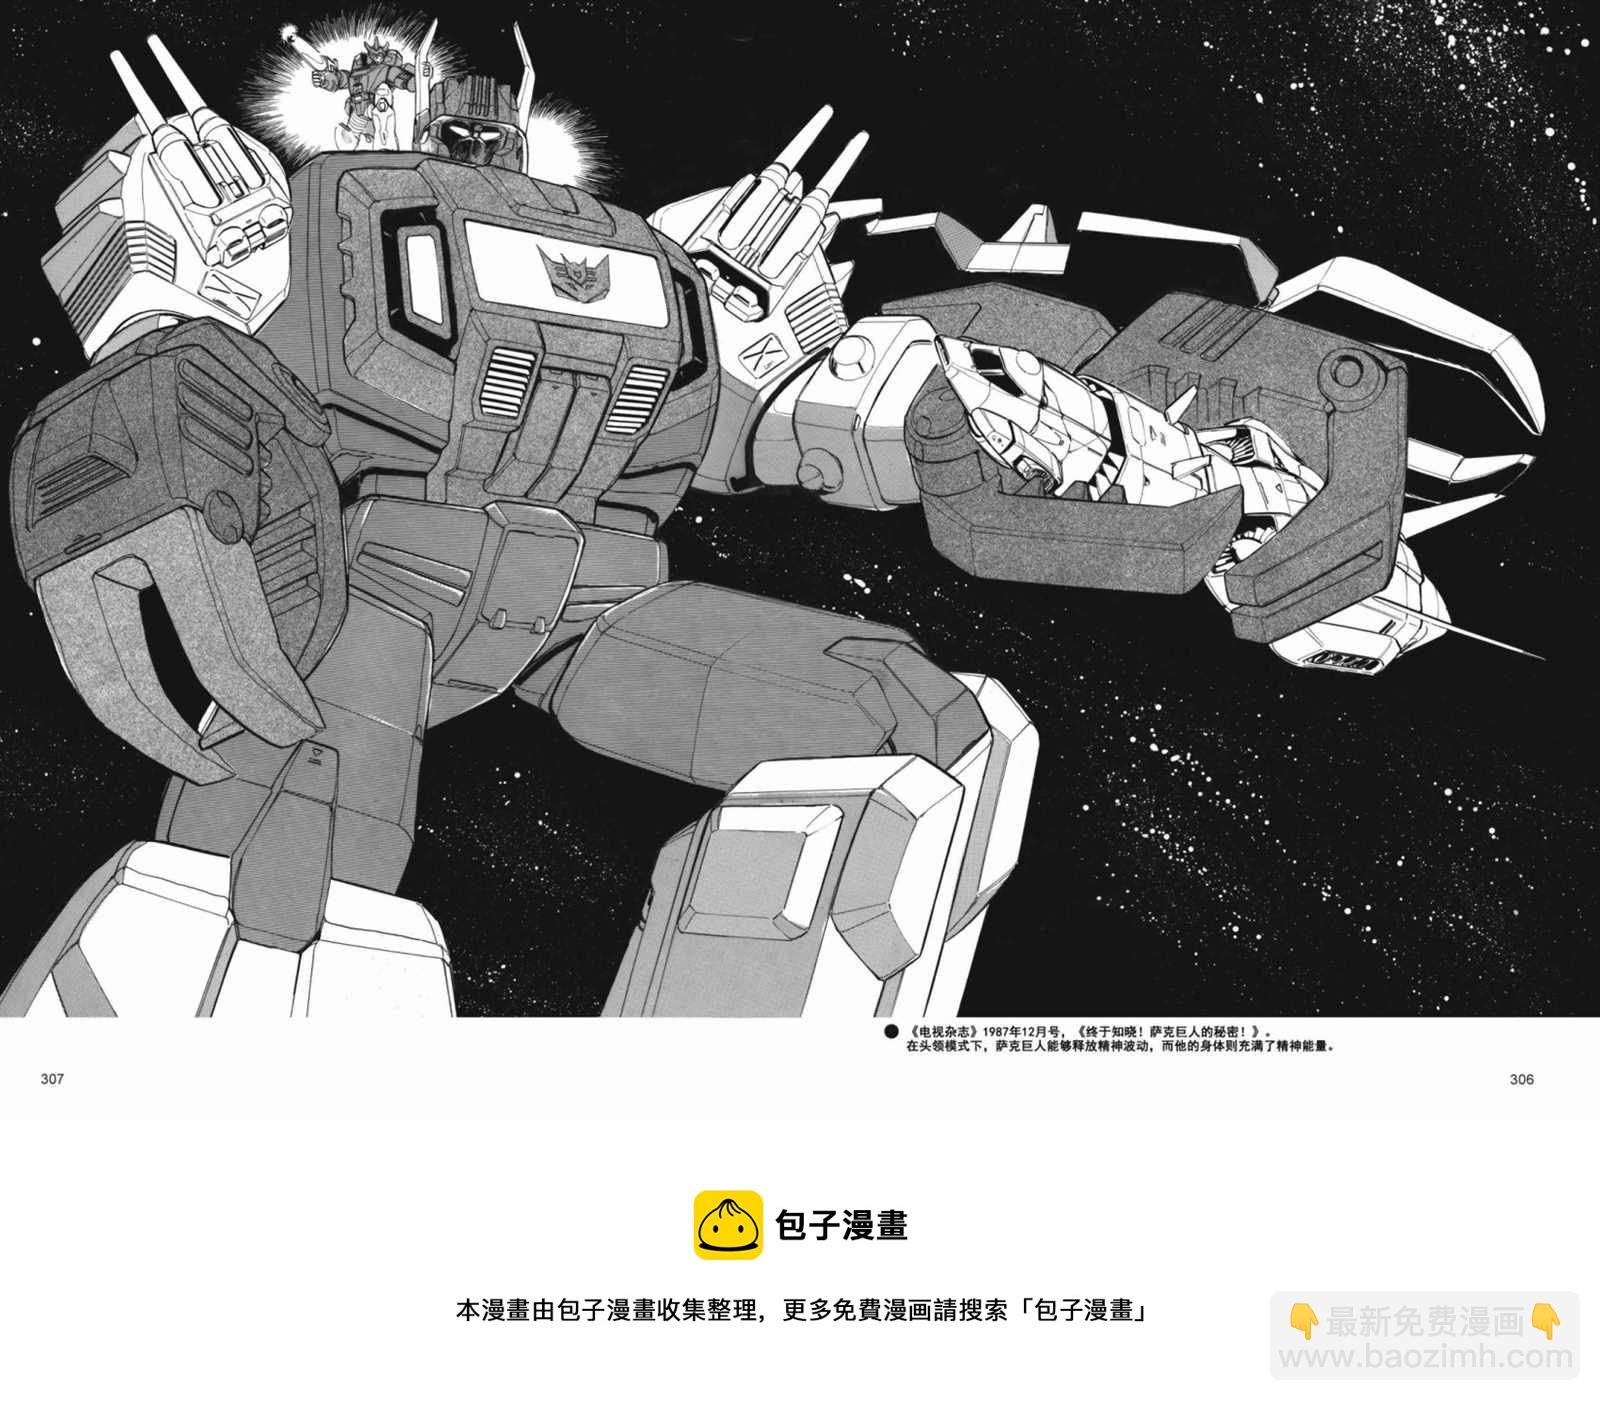 變形金剛日版G1雜誌插畫 - 變形金剛：頭領戰士 - 1